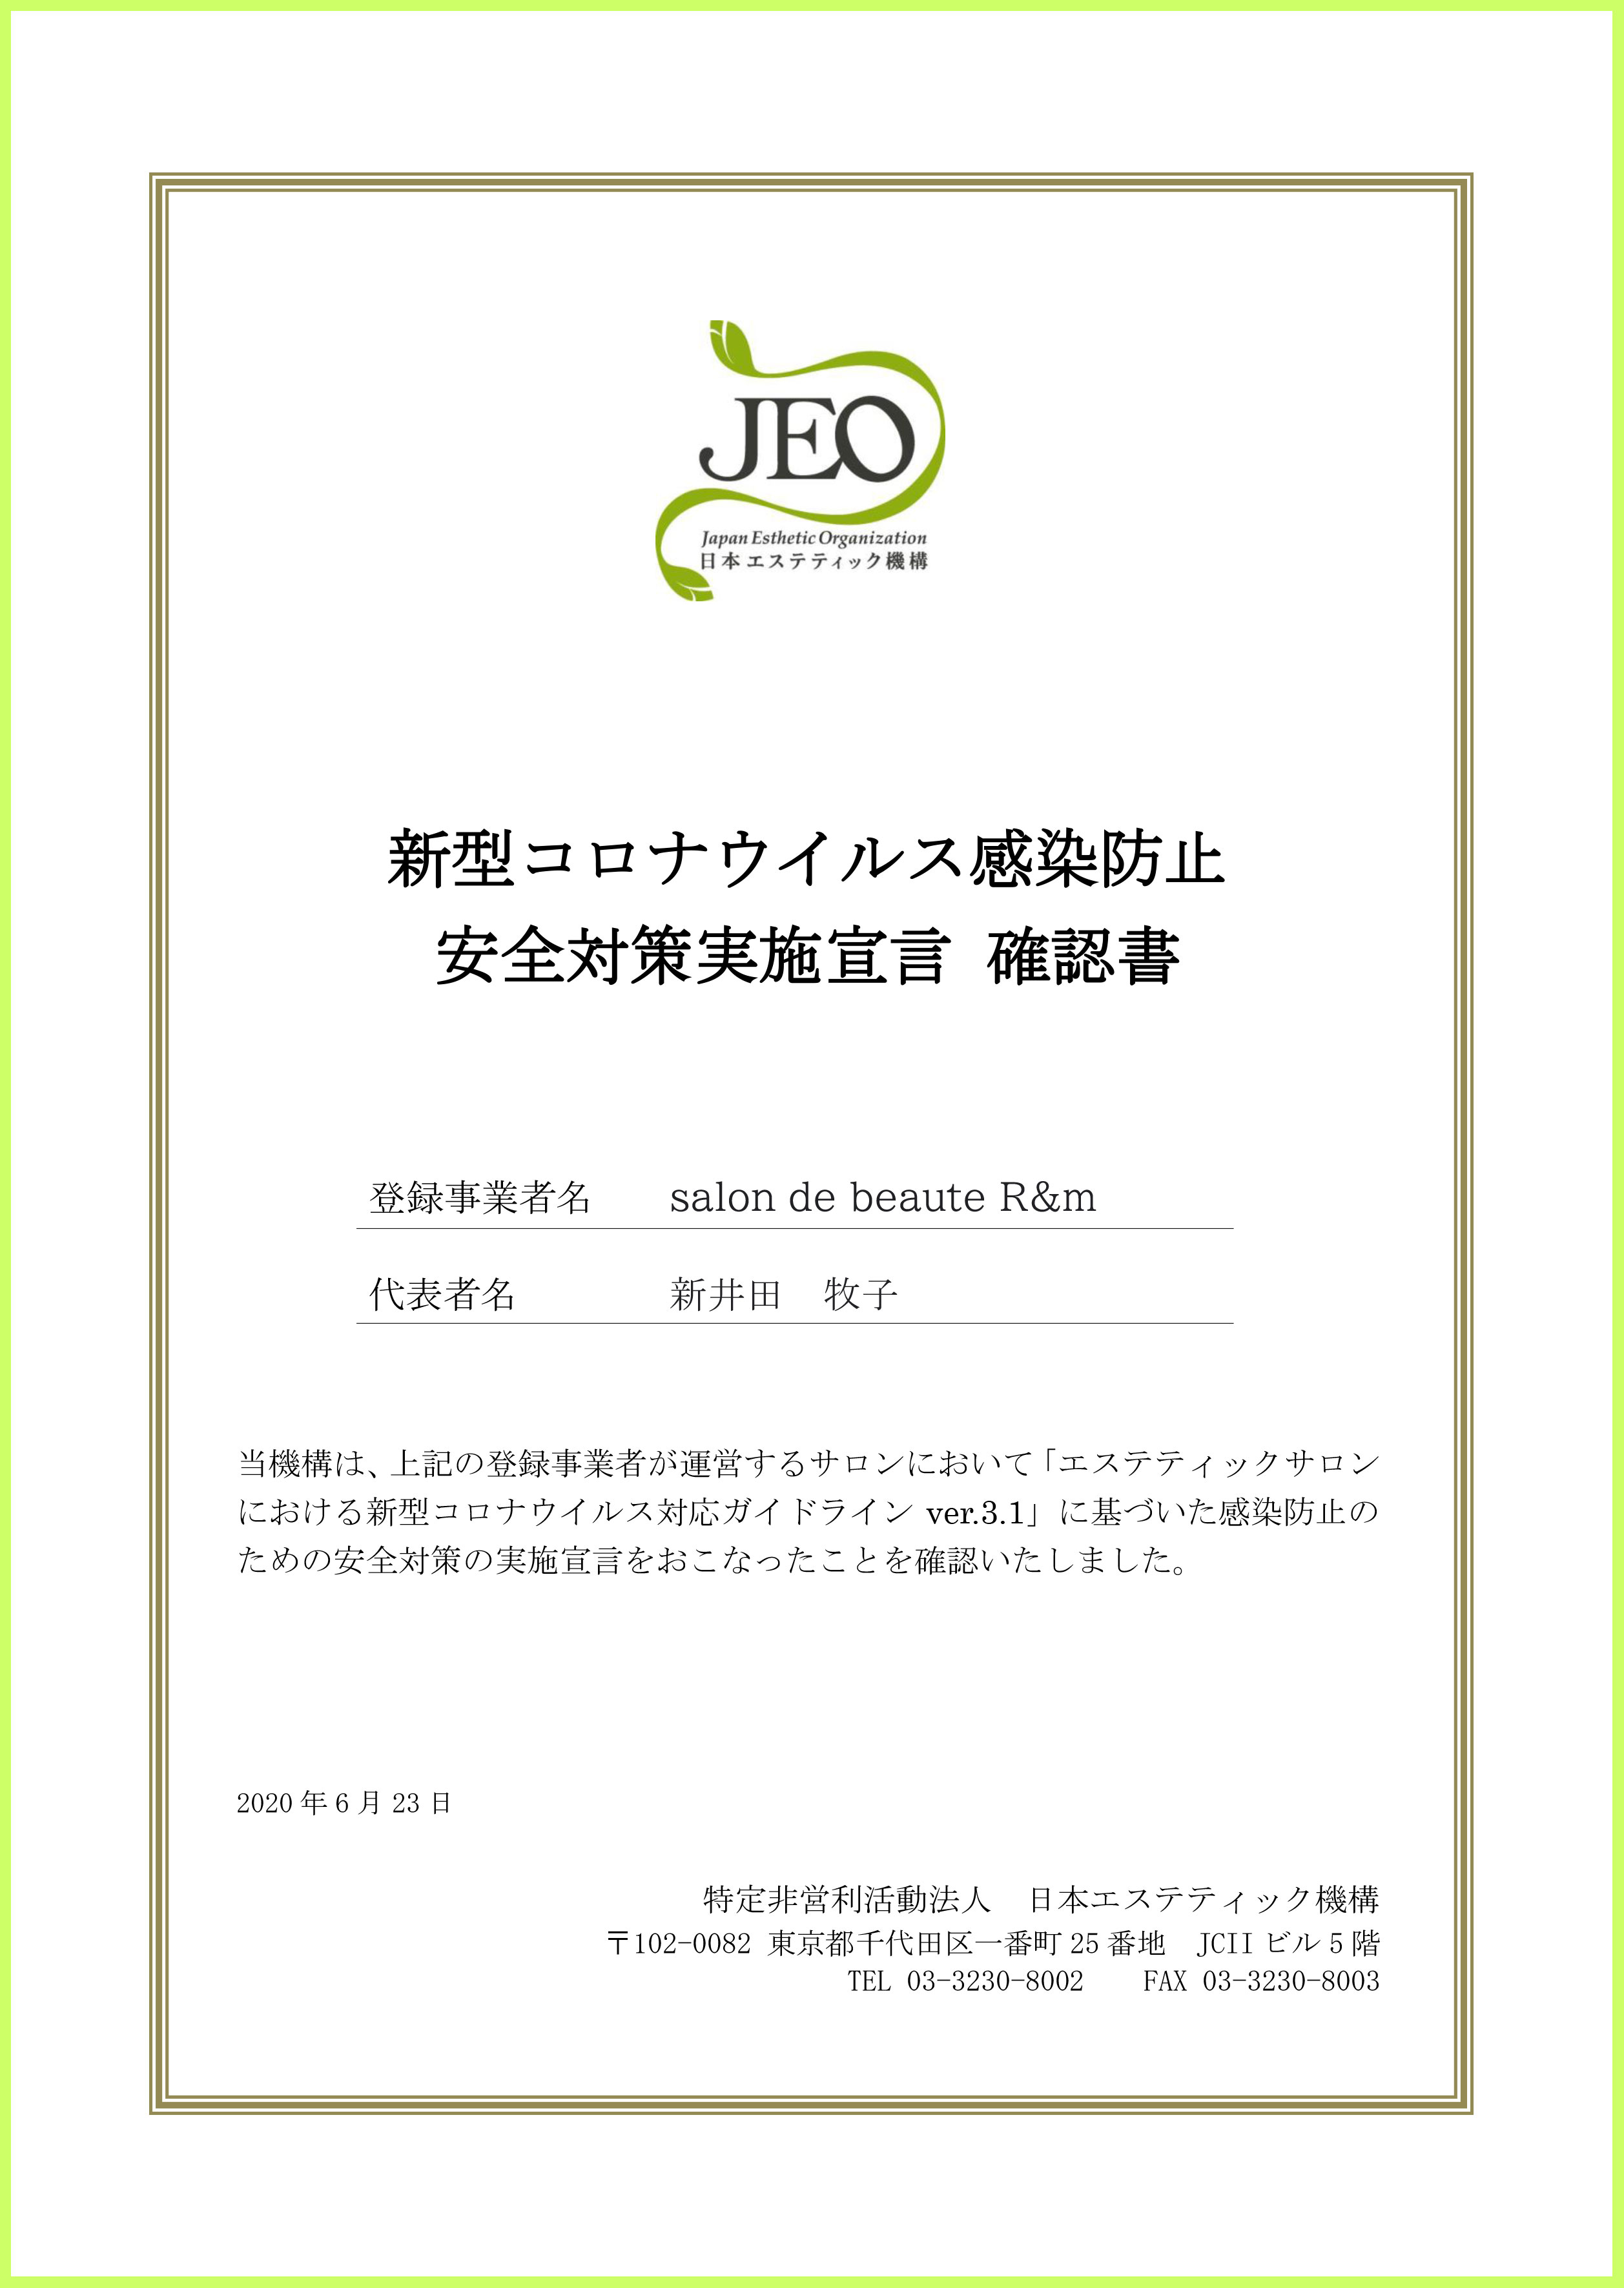 日本エステティック機構より「安全対策実施宣言確認書」をいただきました。